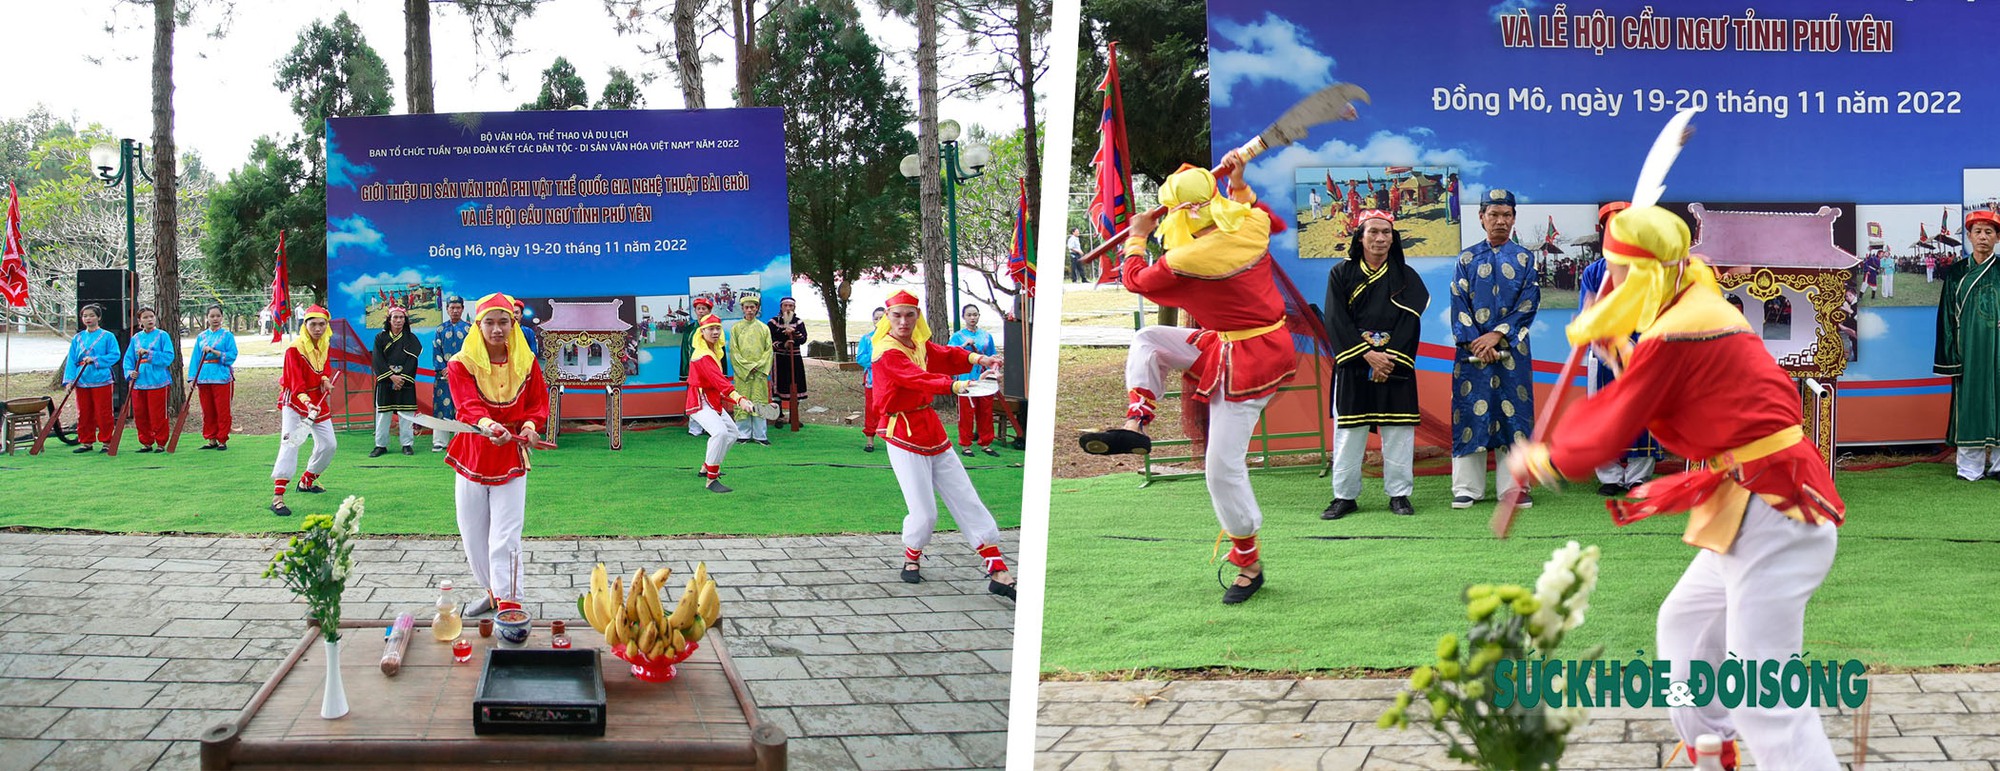 Lễ hội Cầu Ngư - Độc đáo văn hóa biển đảo Việt Nam - Ảnh 7.